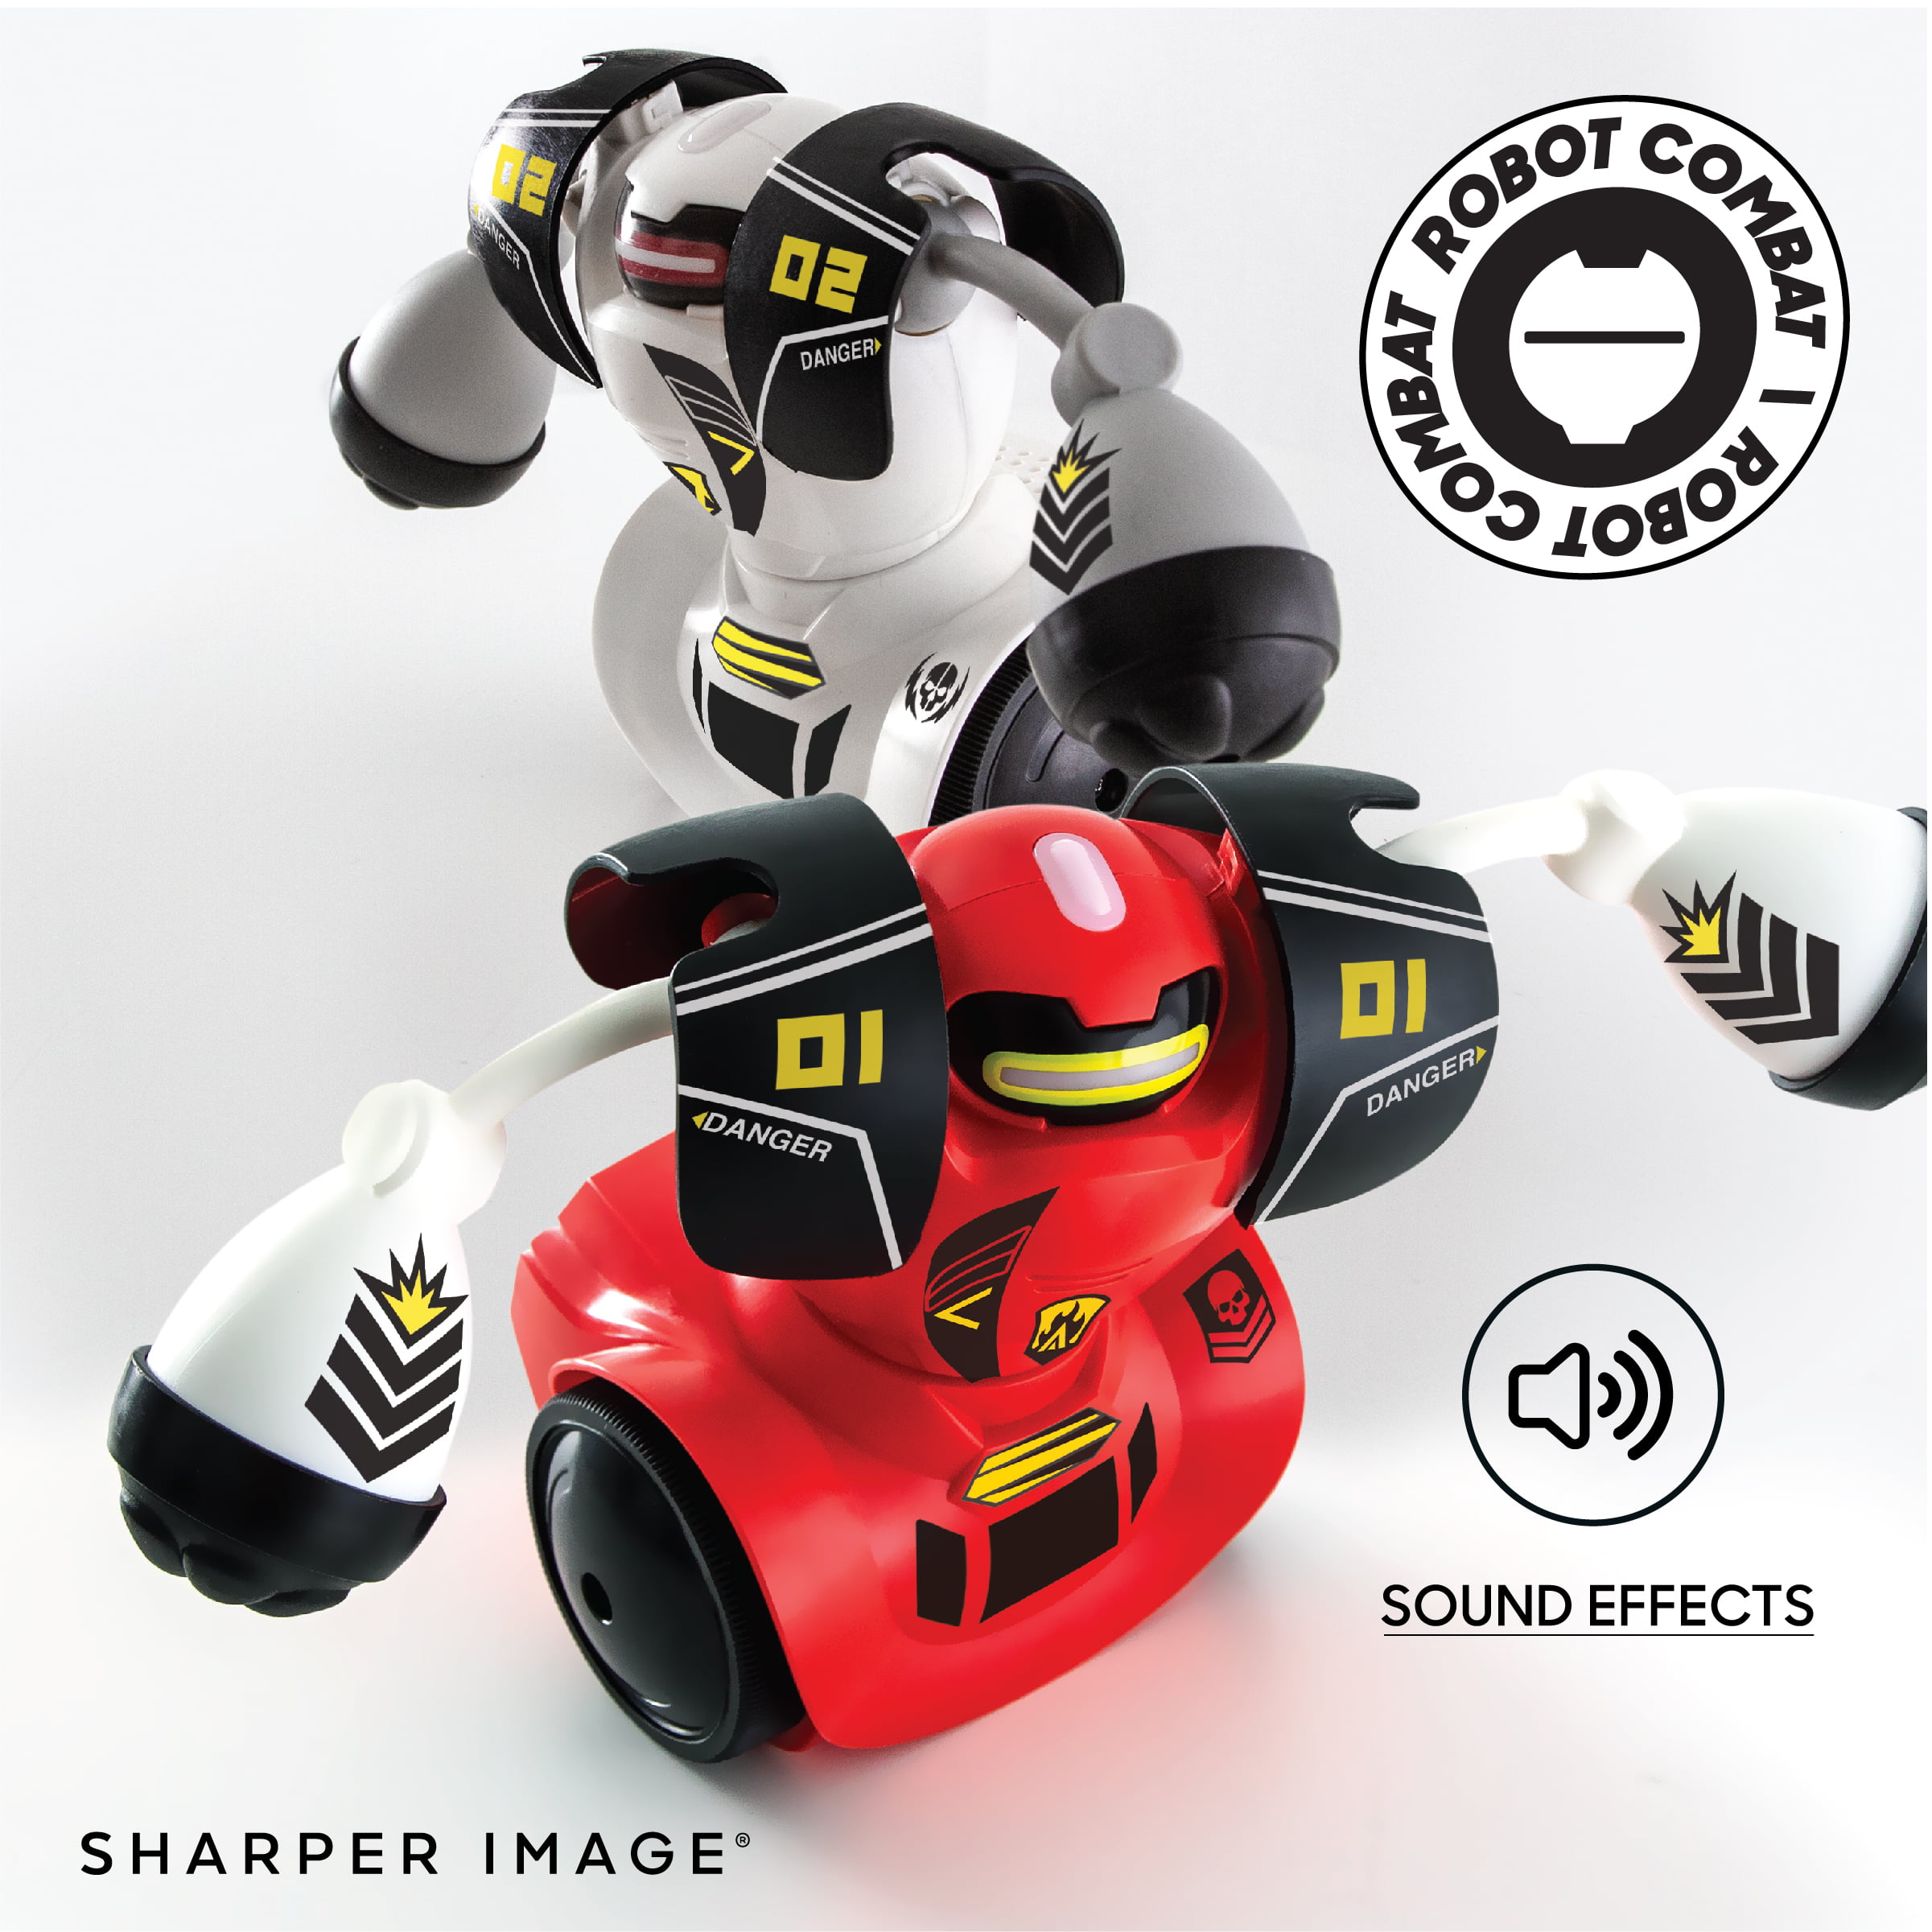 2 Battlebots Rc-remote Control Robot Sharper Image Multiplayer Combat Toy Works for sale online 